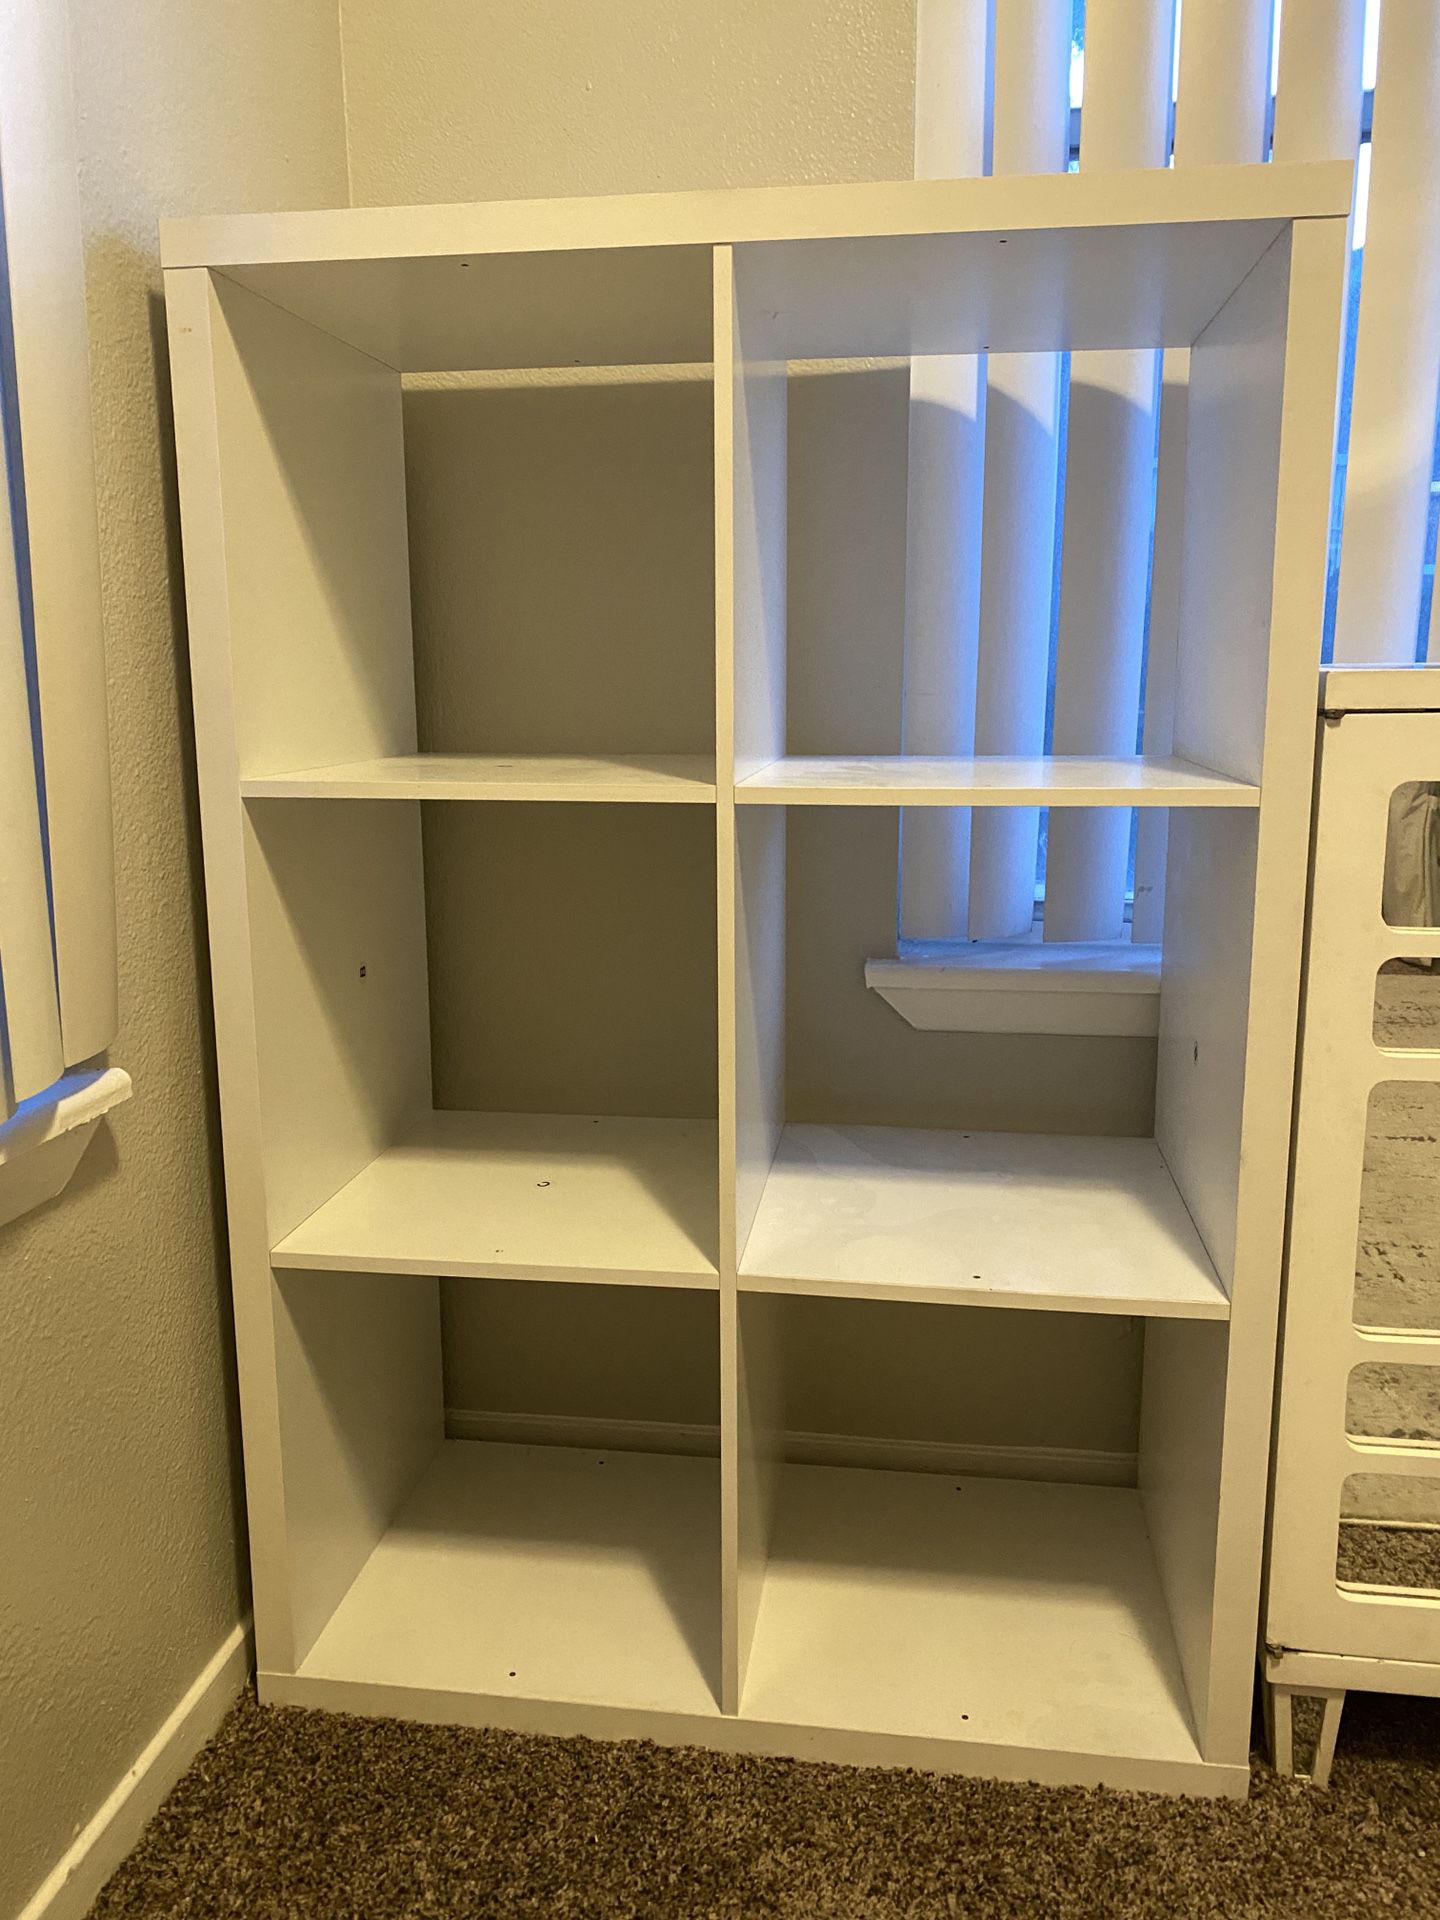 6 Cube Storage Shelf